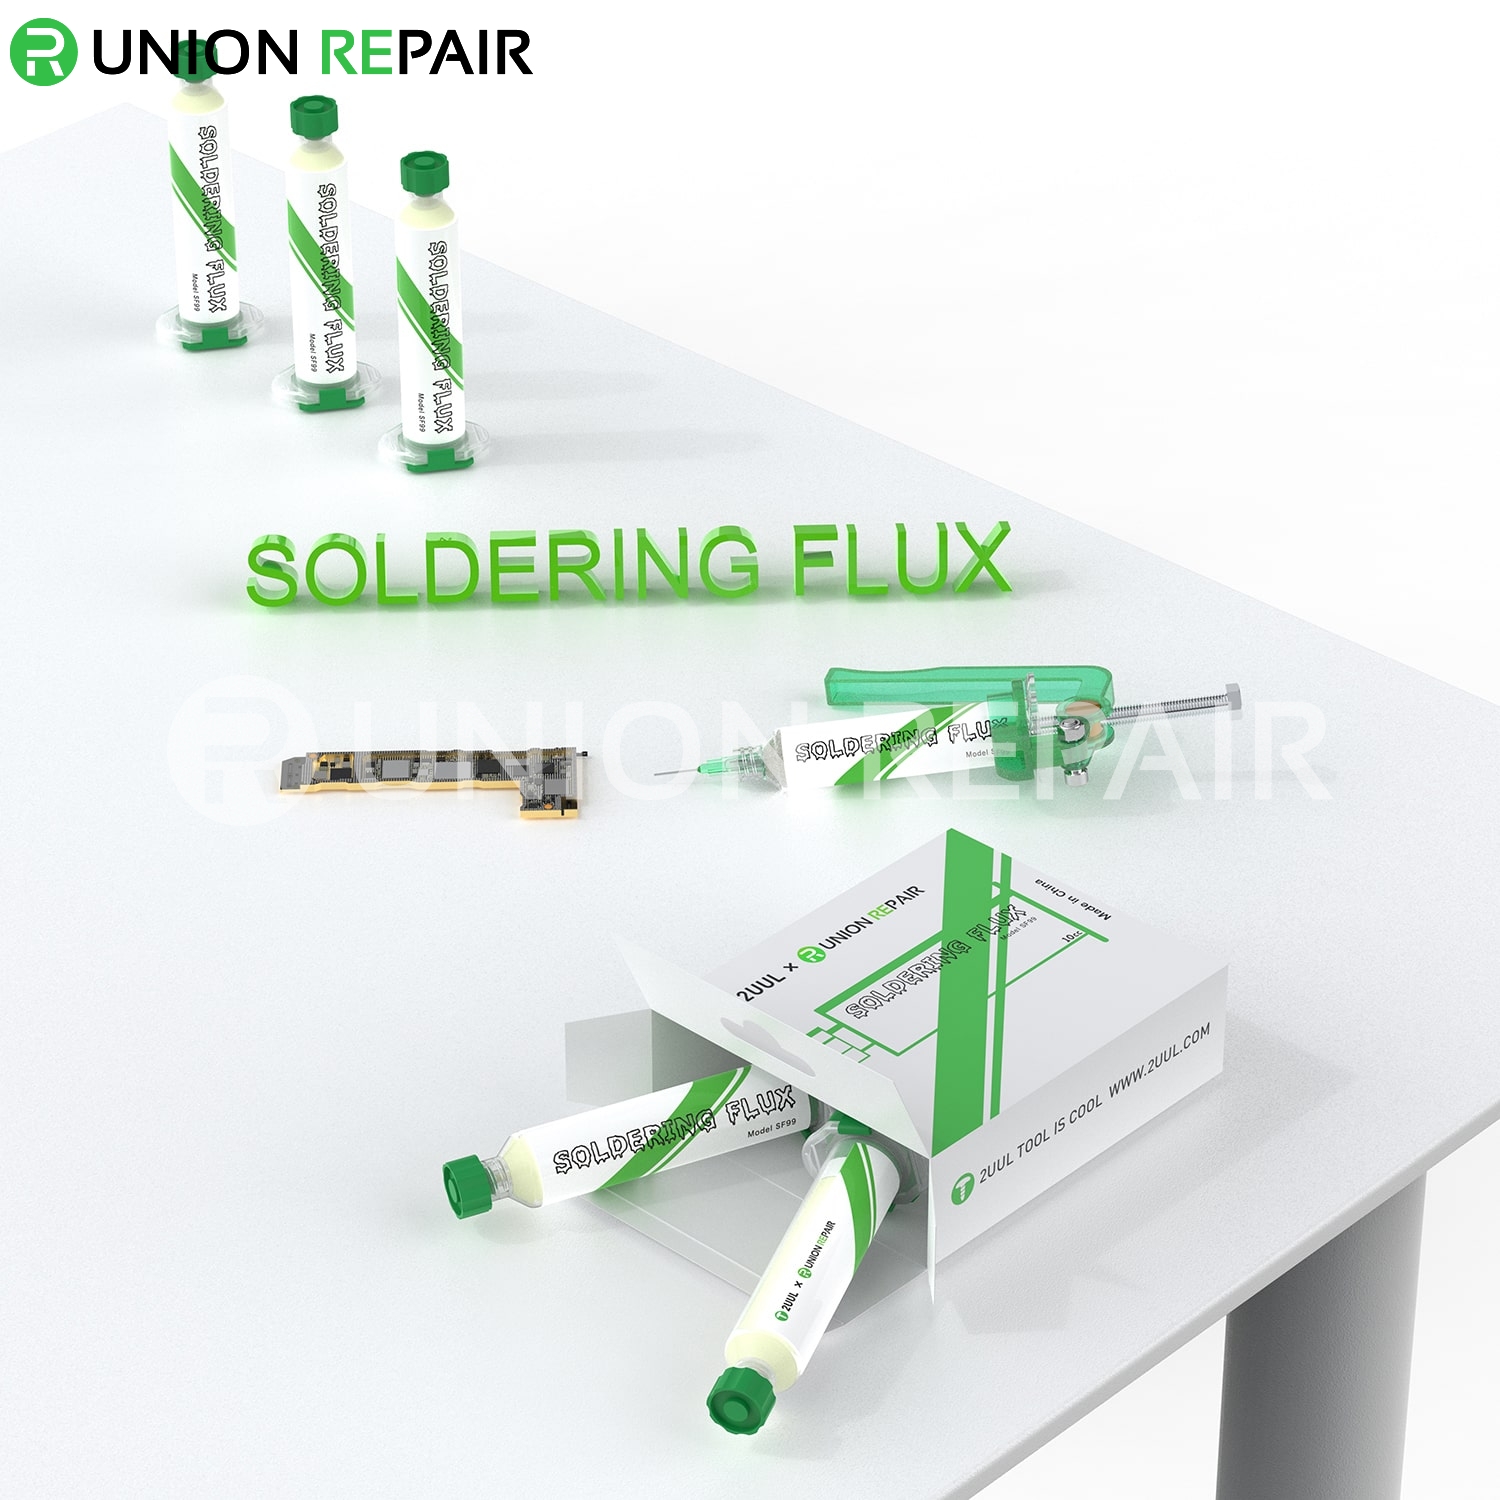 2UUL x UnionRepair Soldering Flux (2pcs/Box)